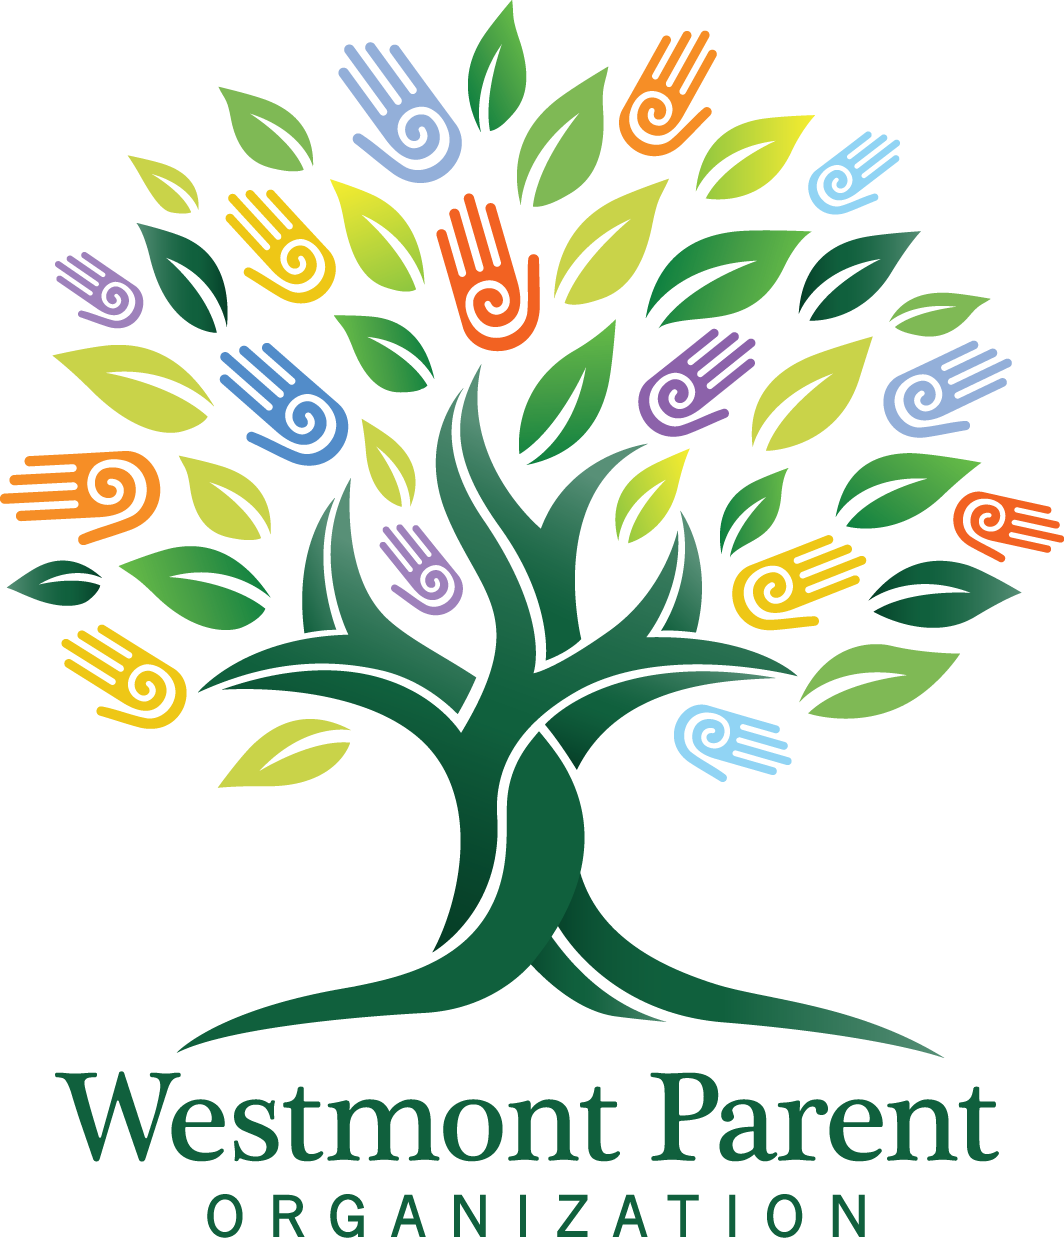 WESTMONT PARENT ORGANIZATION (WPO)